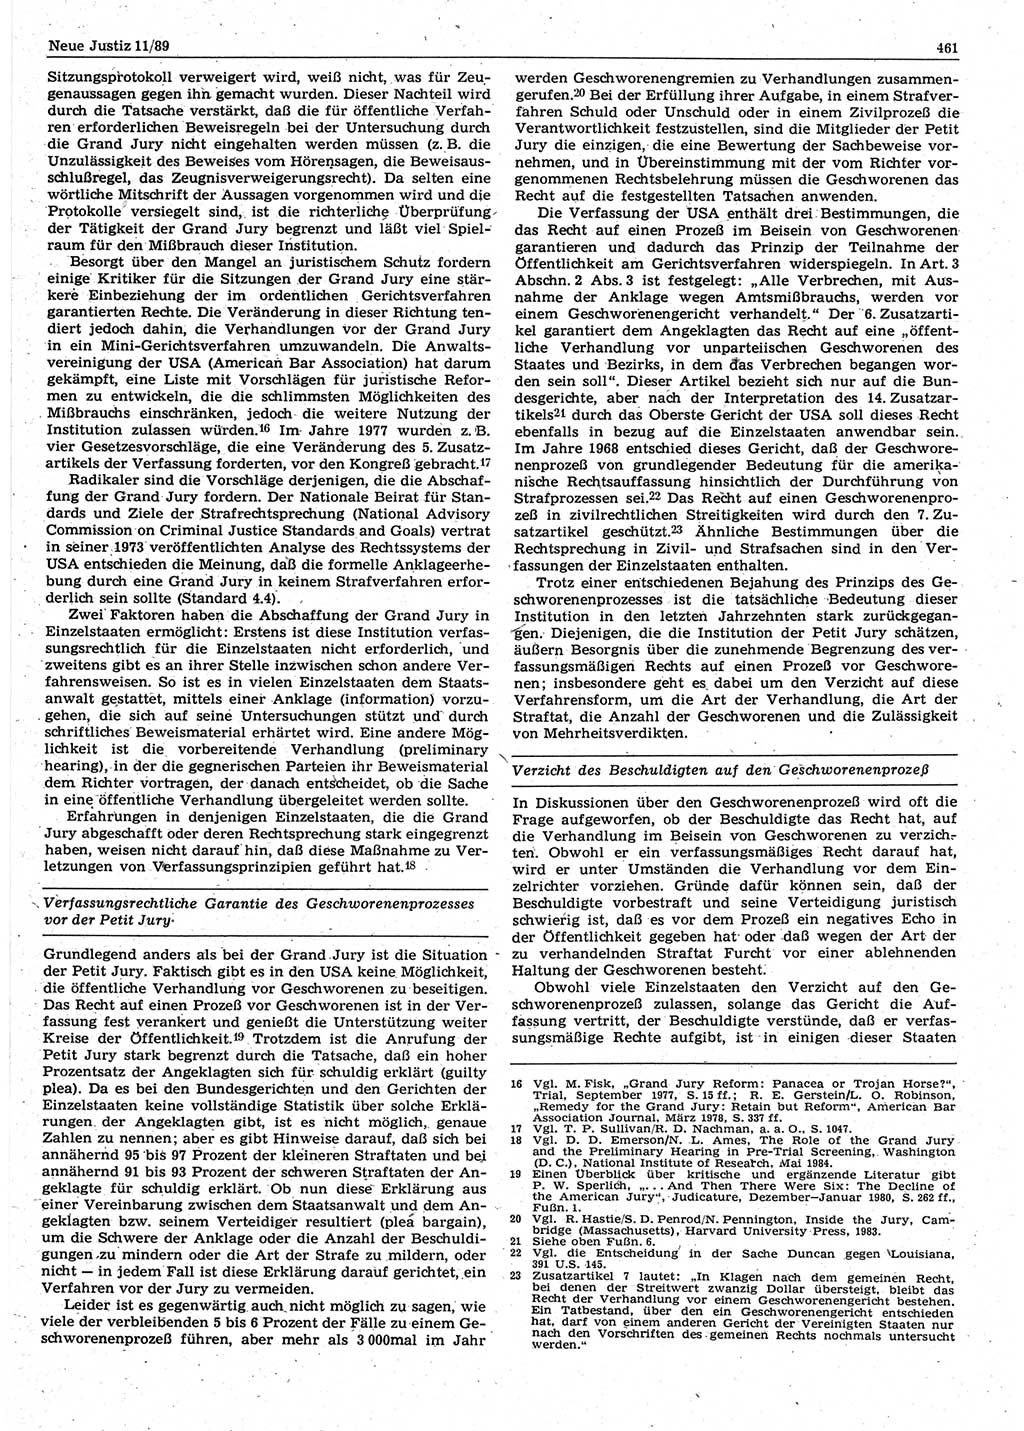 Neue Justiz (NJ), Zeitschrift für sozialistisches Recht und Gesetzlichkeit [Deutsche Demokratische Republik (DDR)], 43. Jahrgang 1989, Seite 461 (NJ DDR 1989, S. 461)